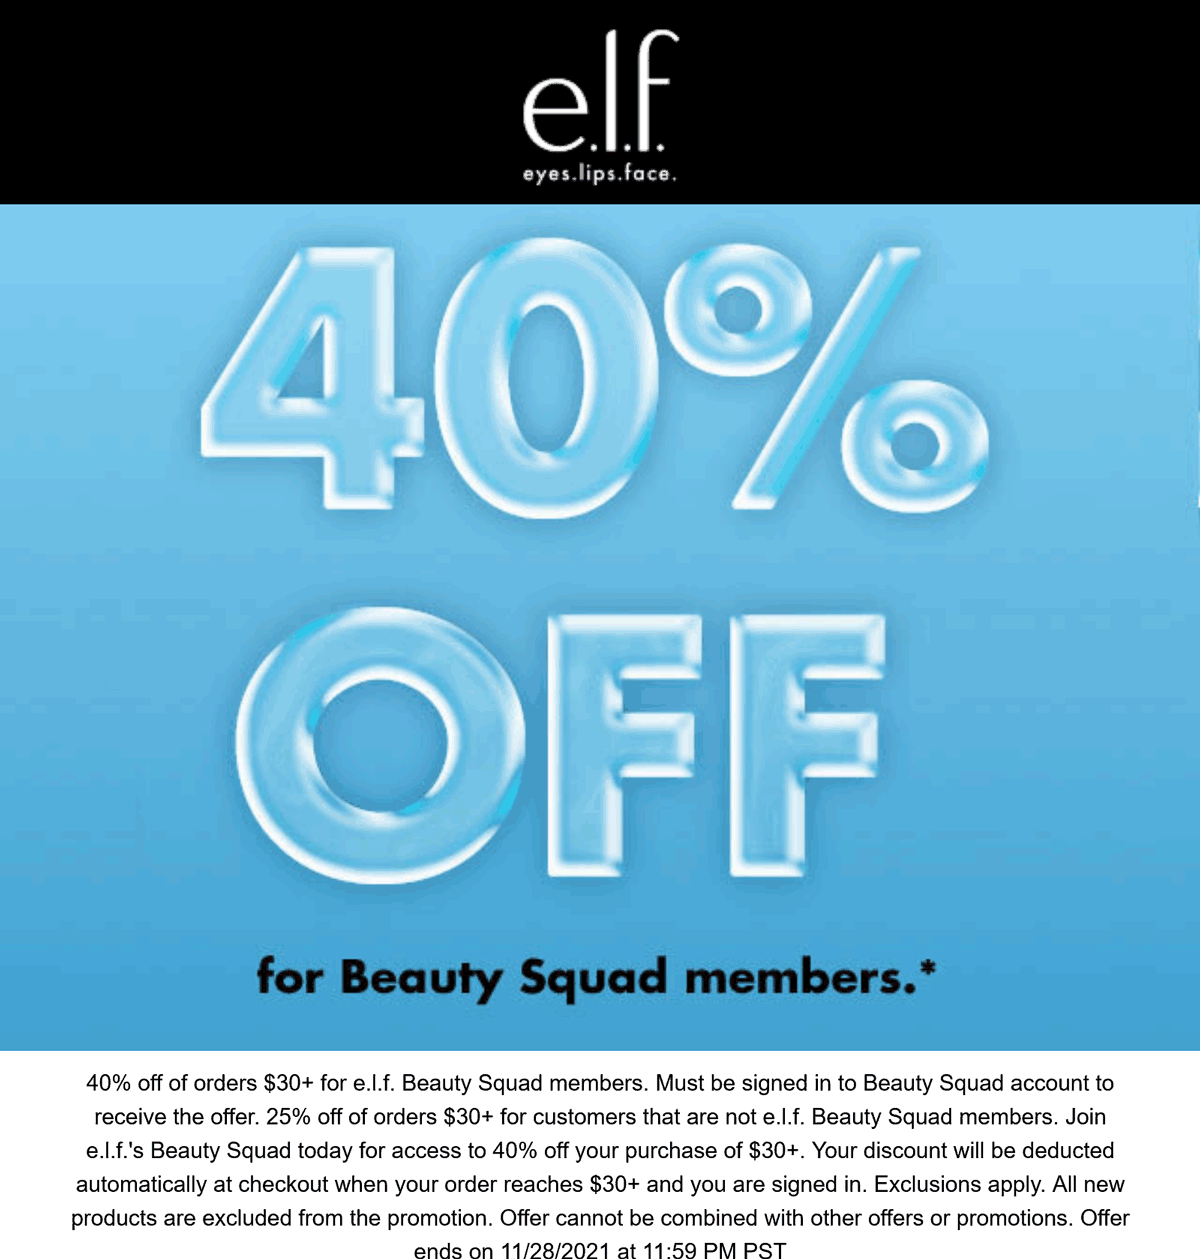 e.l.f. Cosmetics stores Coupon  25-40% off $30+ at e.l.f. Cosmetics #elfcosmetics 